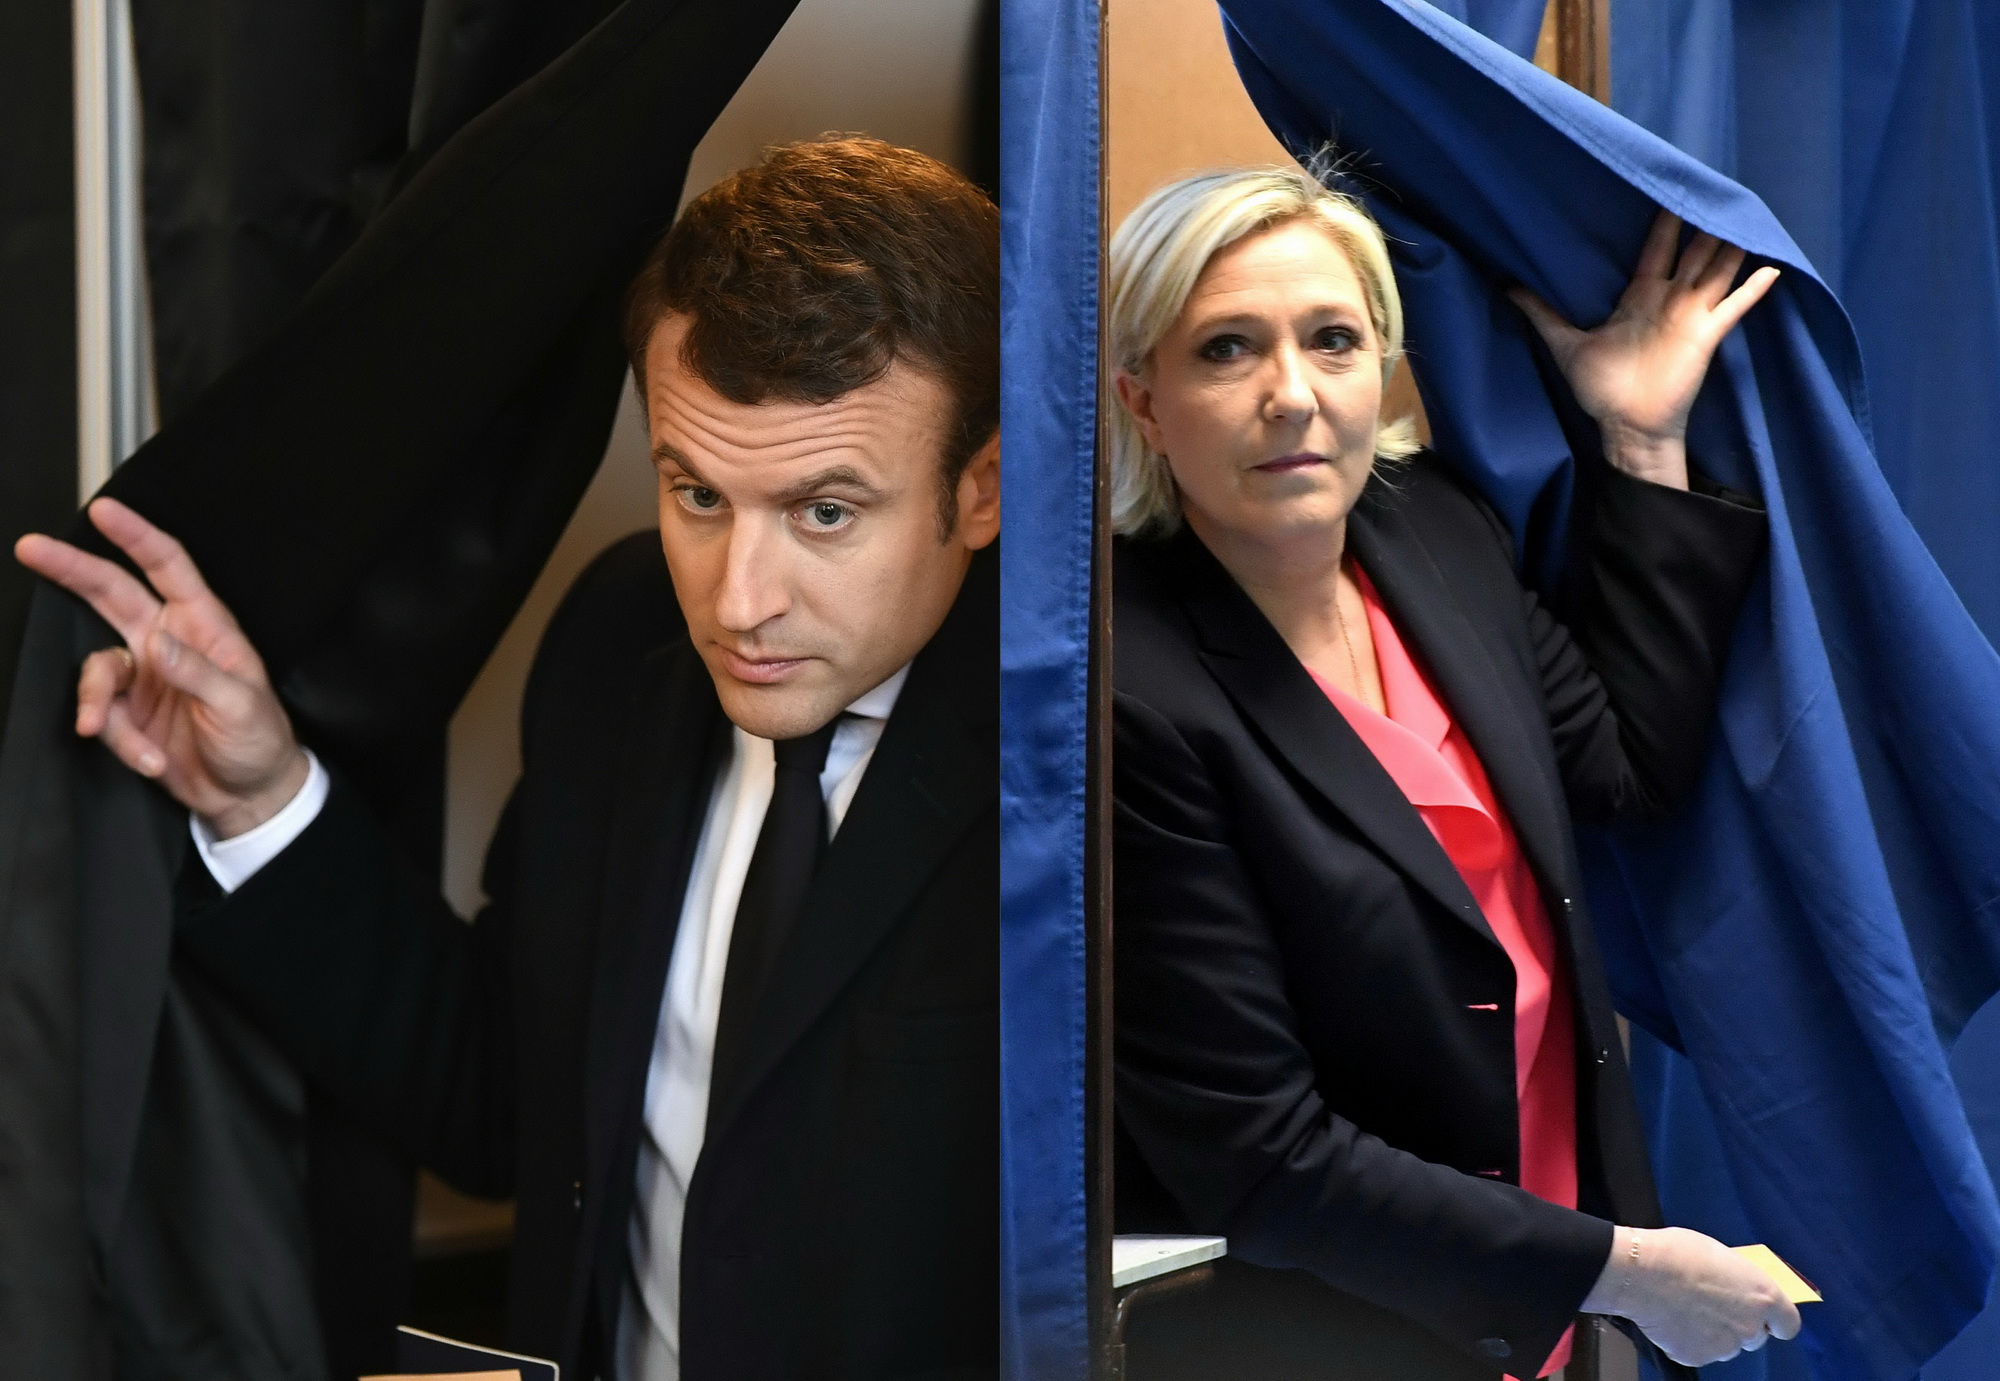 hai ứng cử viên tranh chức Tổng thống Pháp đã đi bỏ phiếu trong cuộc bầu cử vòng 2, cũng là vòng quyết định để chọn ra nhà lãnh đạo mới của nước Pháp trong 5 năm tới. Ứng cử viên theo đường lối trung dung Emmanuel Macron (trái), cựu Bộ trưởng Kinh tế Pháp, cùng vợ đã đi bầu cử tại điểm bỏ phiếu ở thành phố Le Touquet , miền Bắc nước Pháp. Trong khi đó, đối thủ của ông - cựu Chủ tịch đảng Mặt trận quốc gia (FN) Marine Le Pen (phải) theo xu hướng cực hữu, thực hiện quyền công dân của mình tại điểm bỏ phiếu ở thành phố Henin-Beaumont. AFP/TTXVN